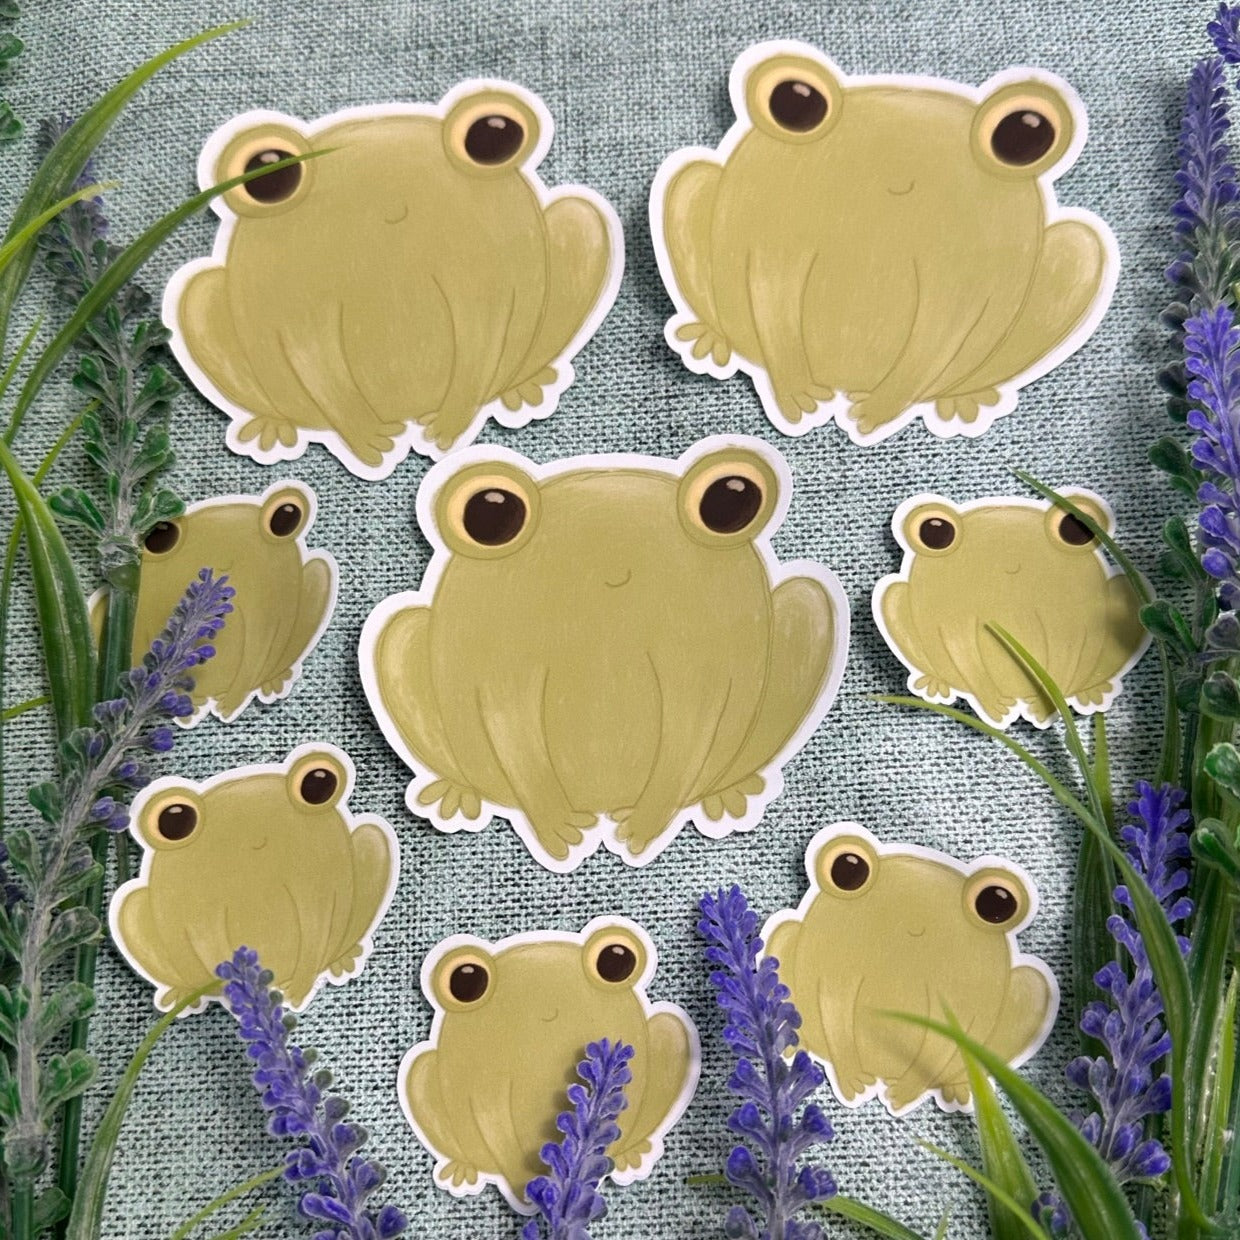 Froggo the frog Waterproof Vinyl Sticker